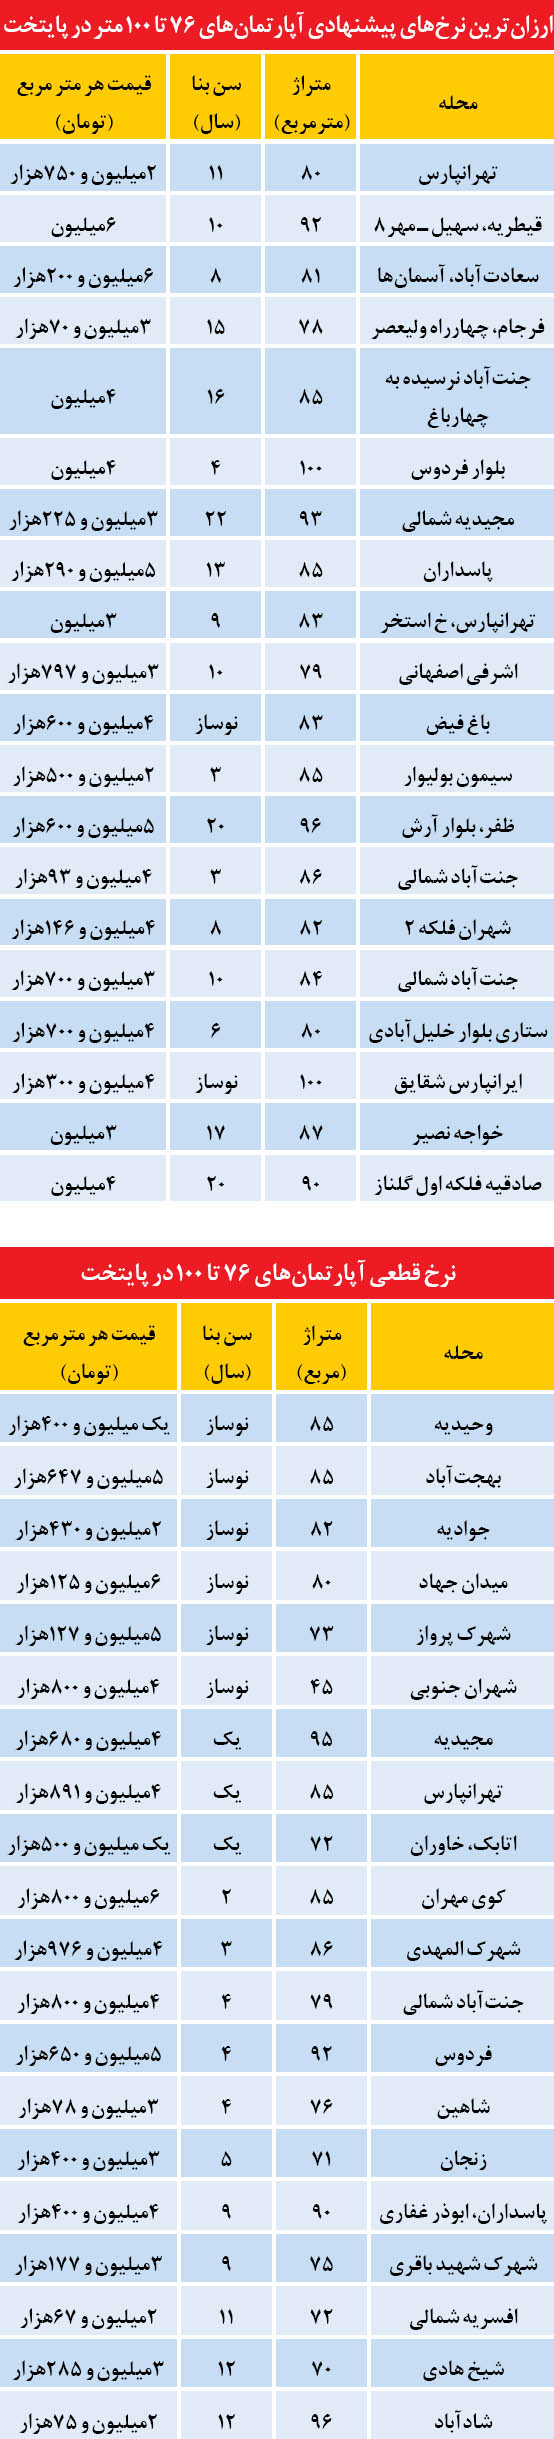 قیمت آپارتمان های زیر 100 متر در تهران (جدول)